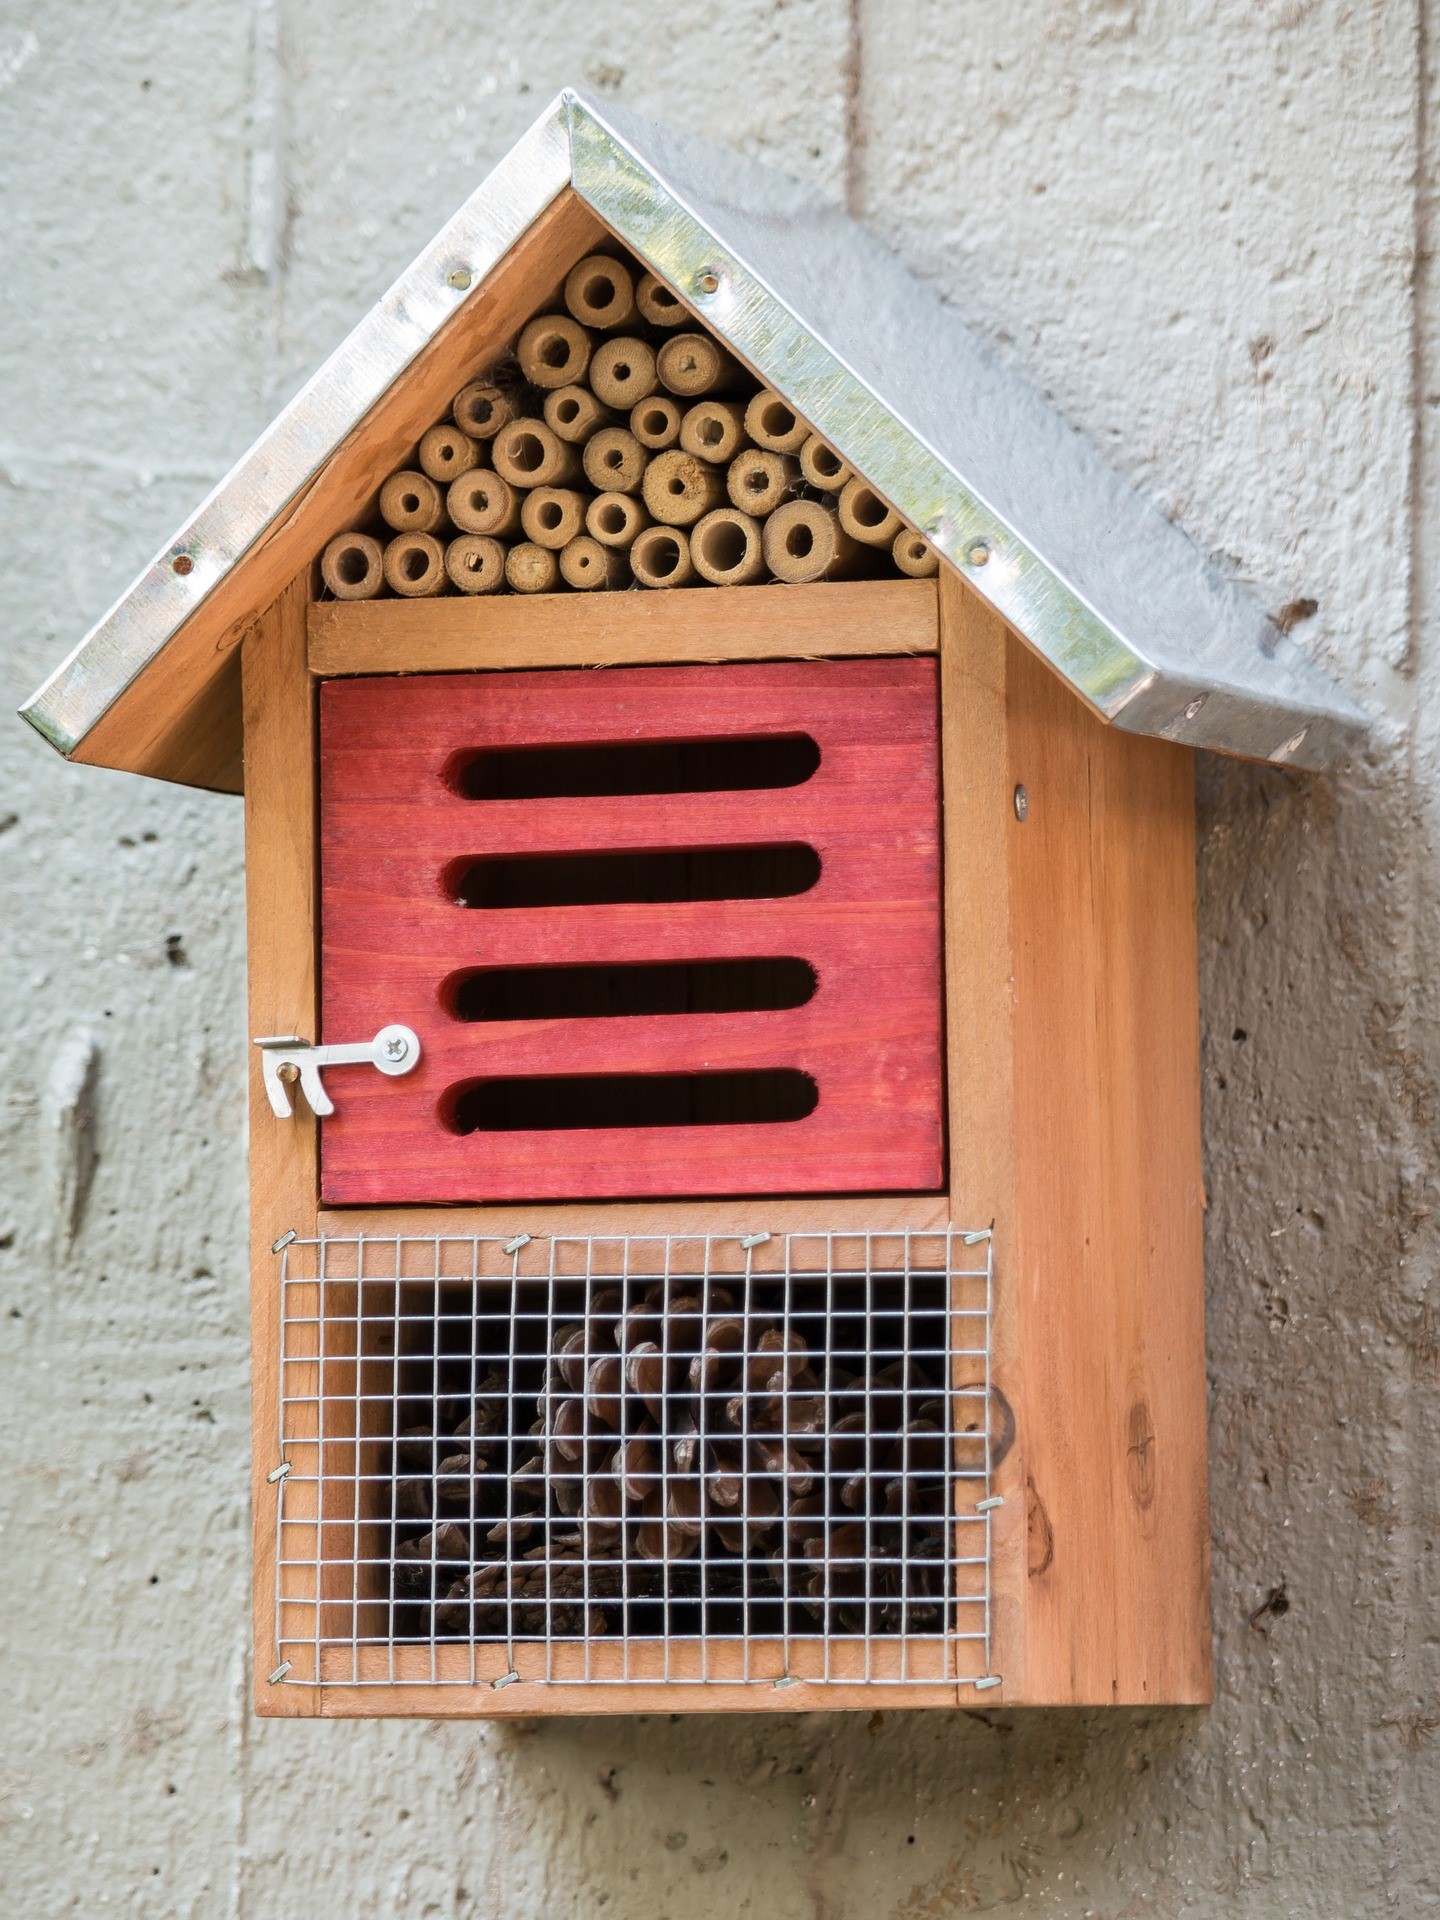 Costruisci una casa per gli insetti utili fito for Costruisci case